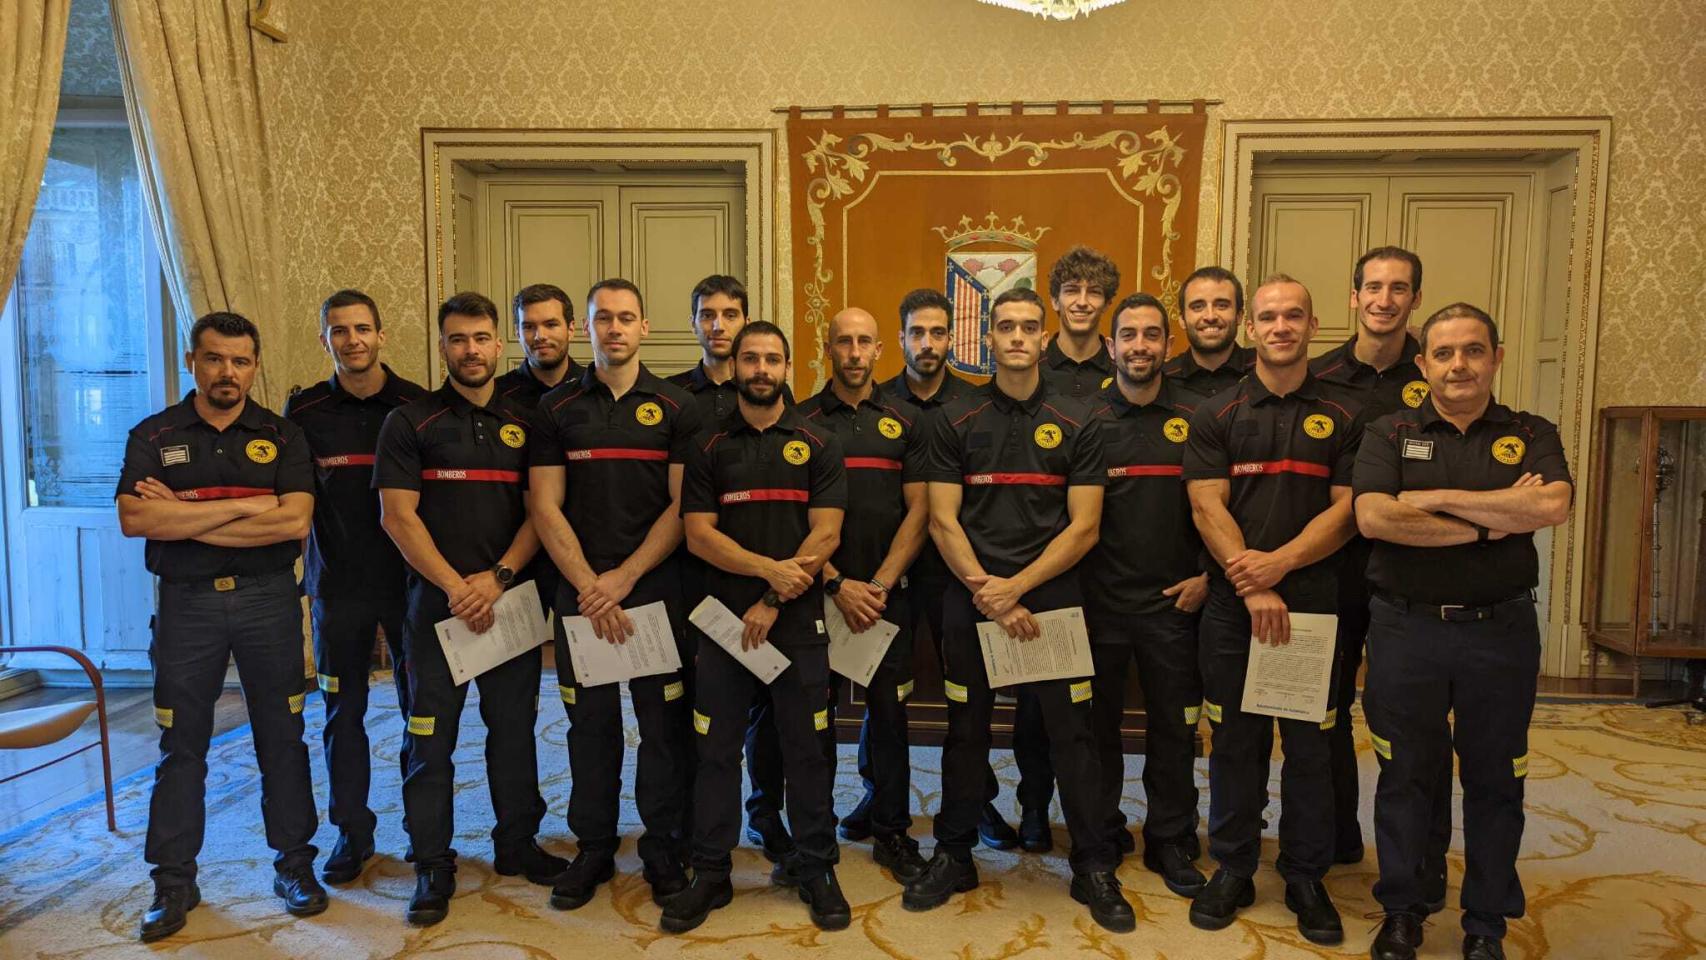 Salamanca capital cuenta con 14 nuevos bomberos